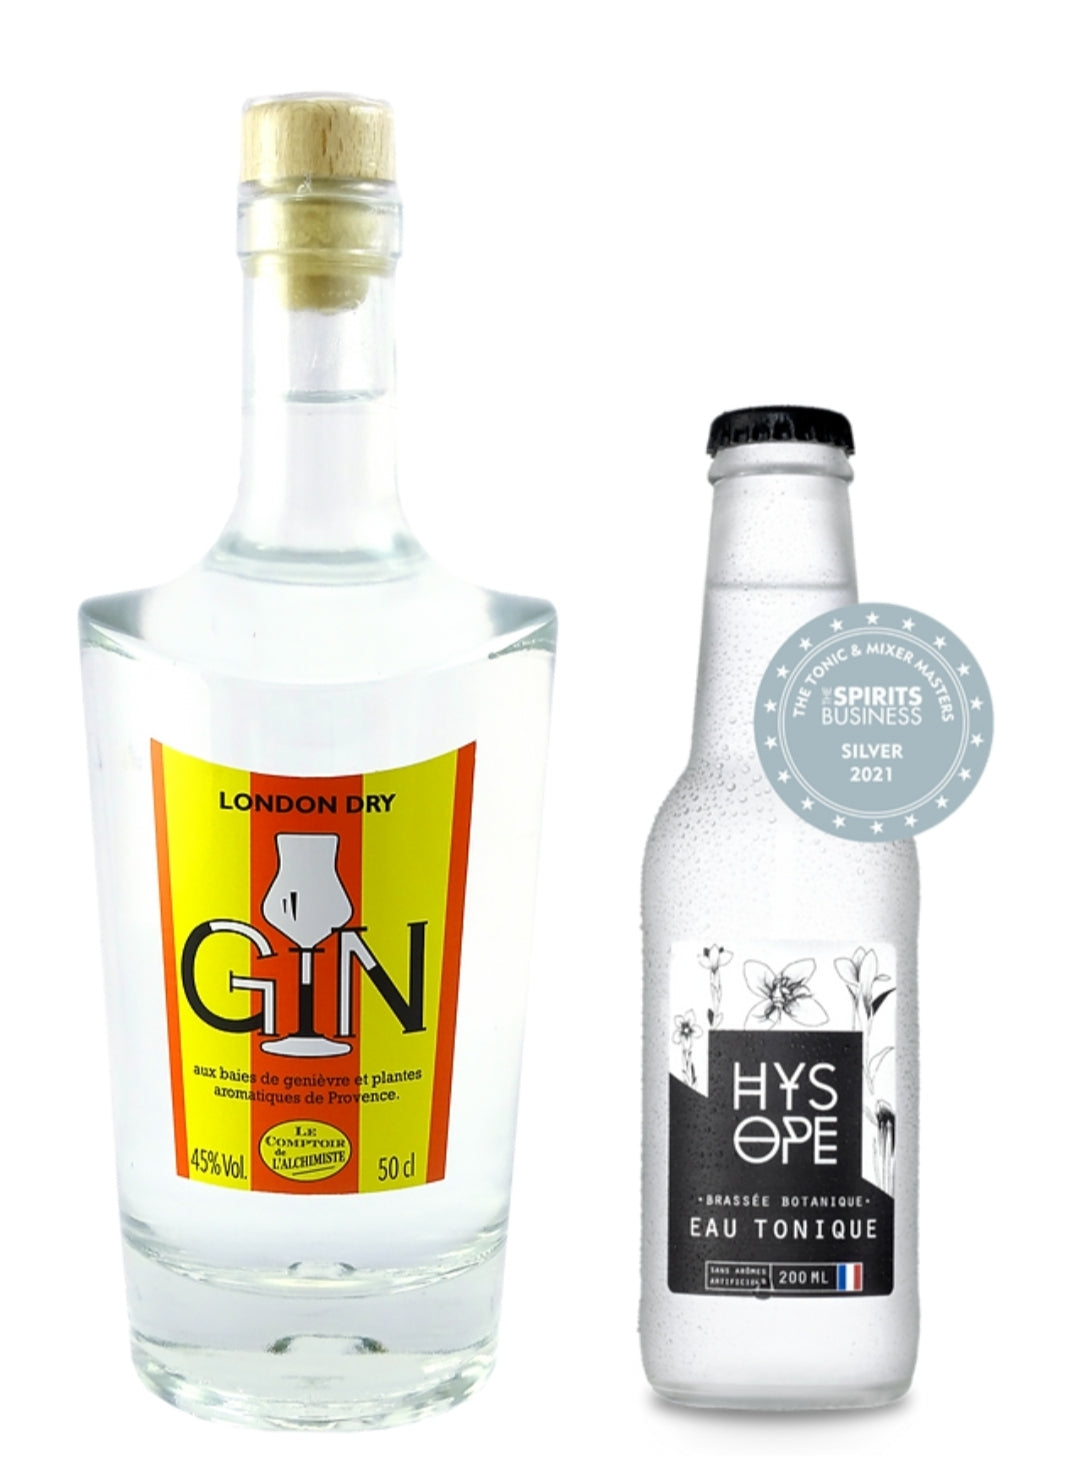 Gin & Tonic
Français